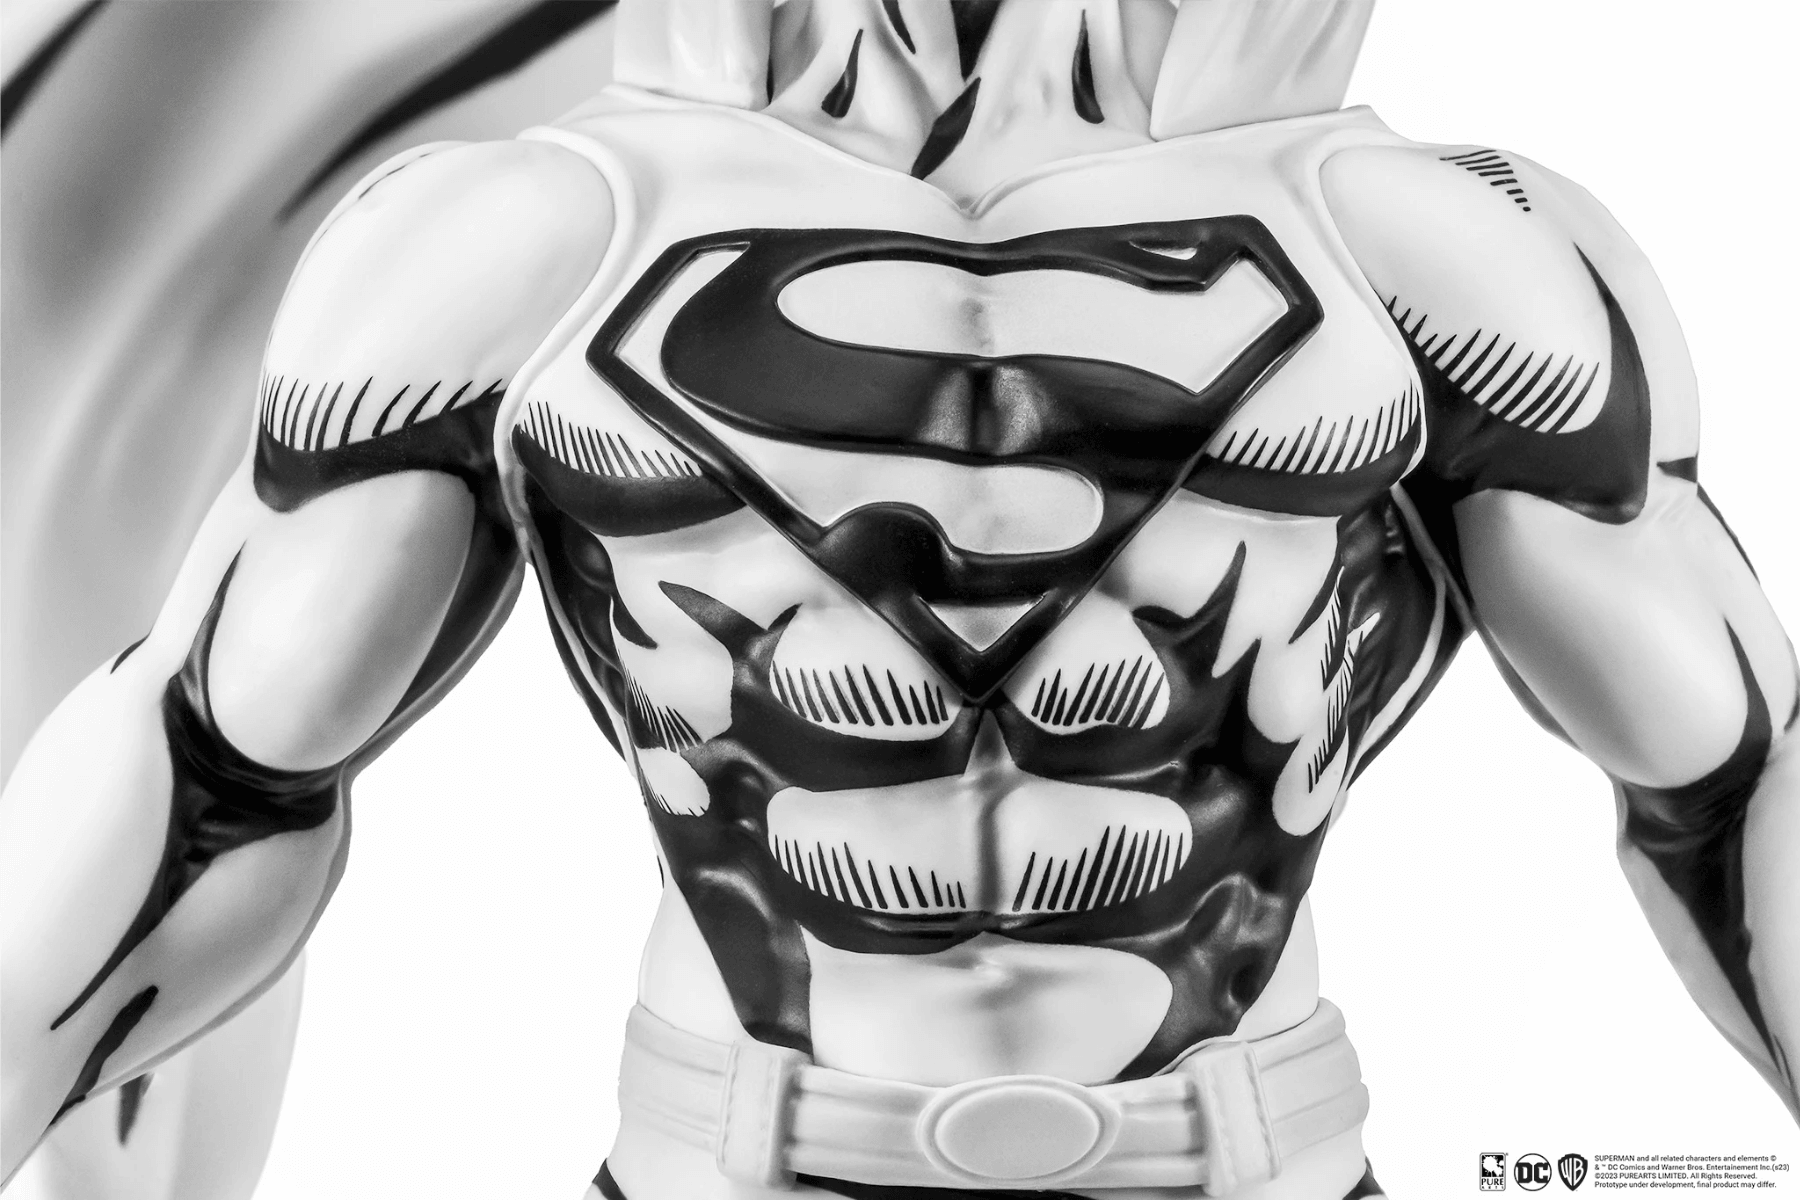 PURPA002SU Superman - Superman (John Byrne) Black & White PVC 1:8 Scale Statue - First 4 Figures - Titan Pop Culture